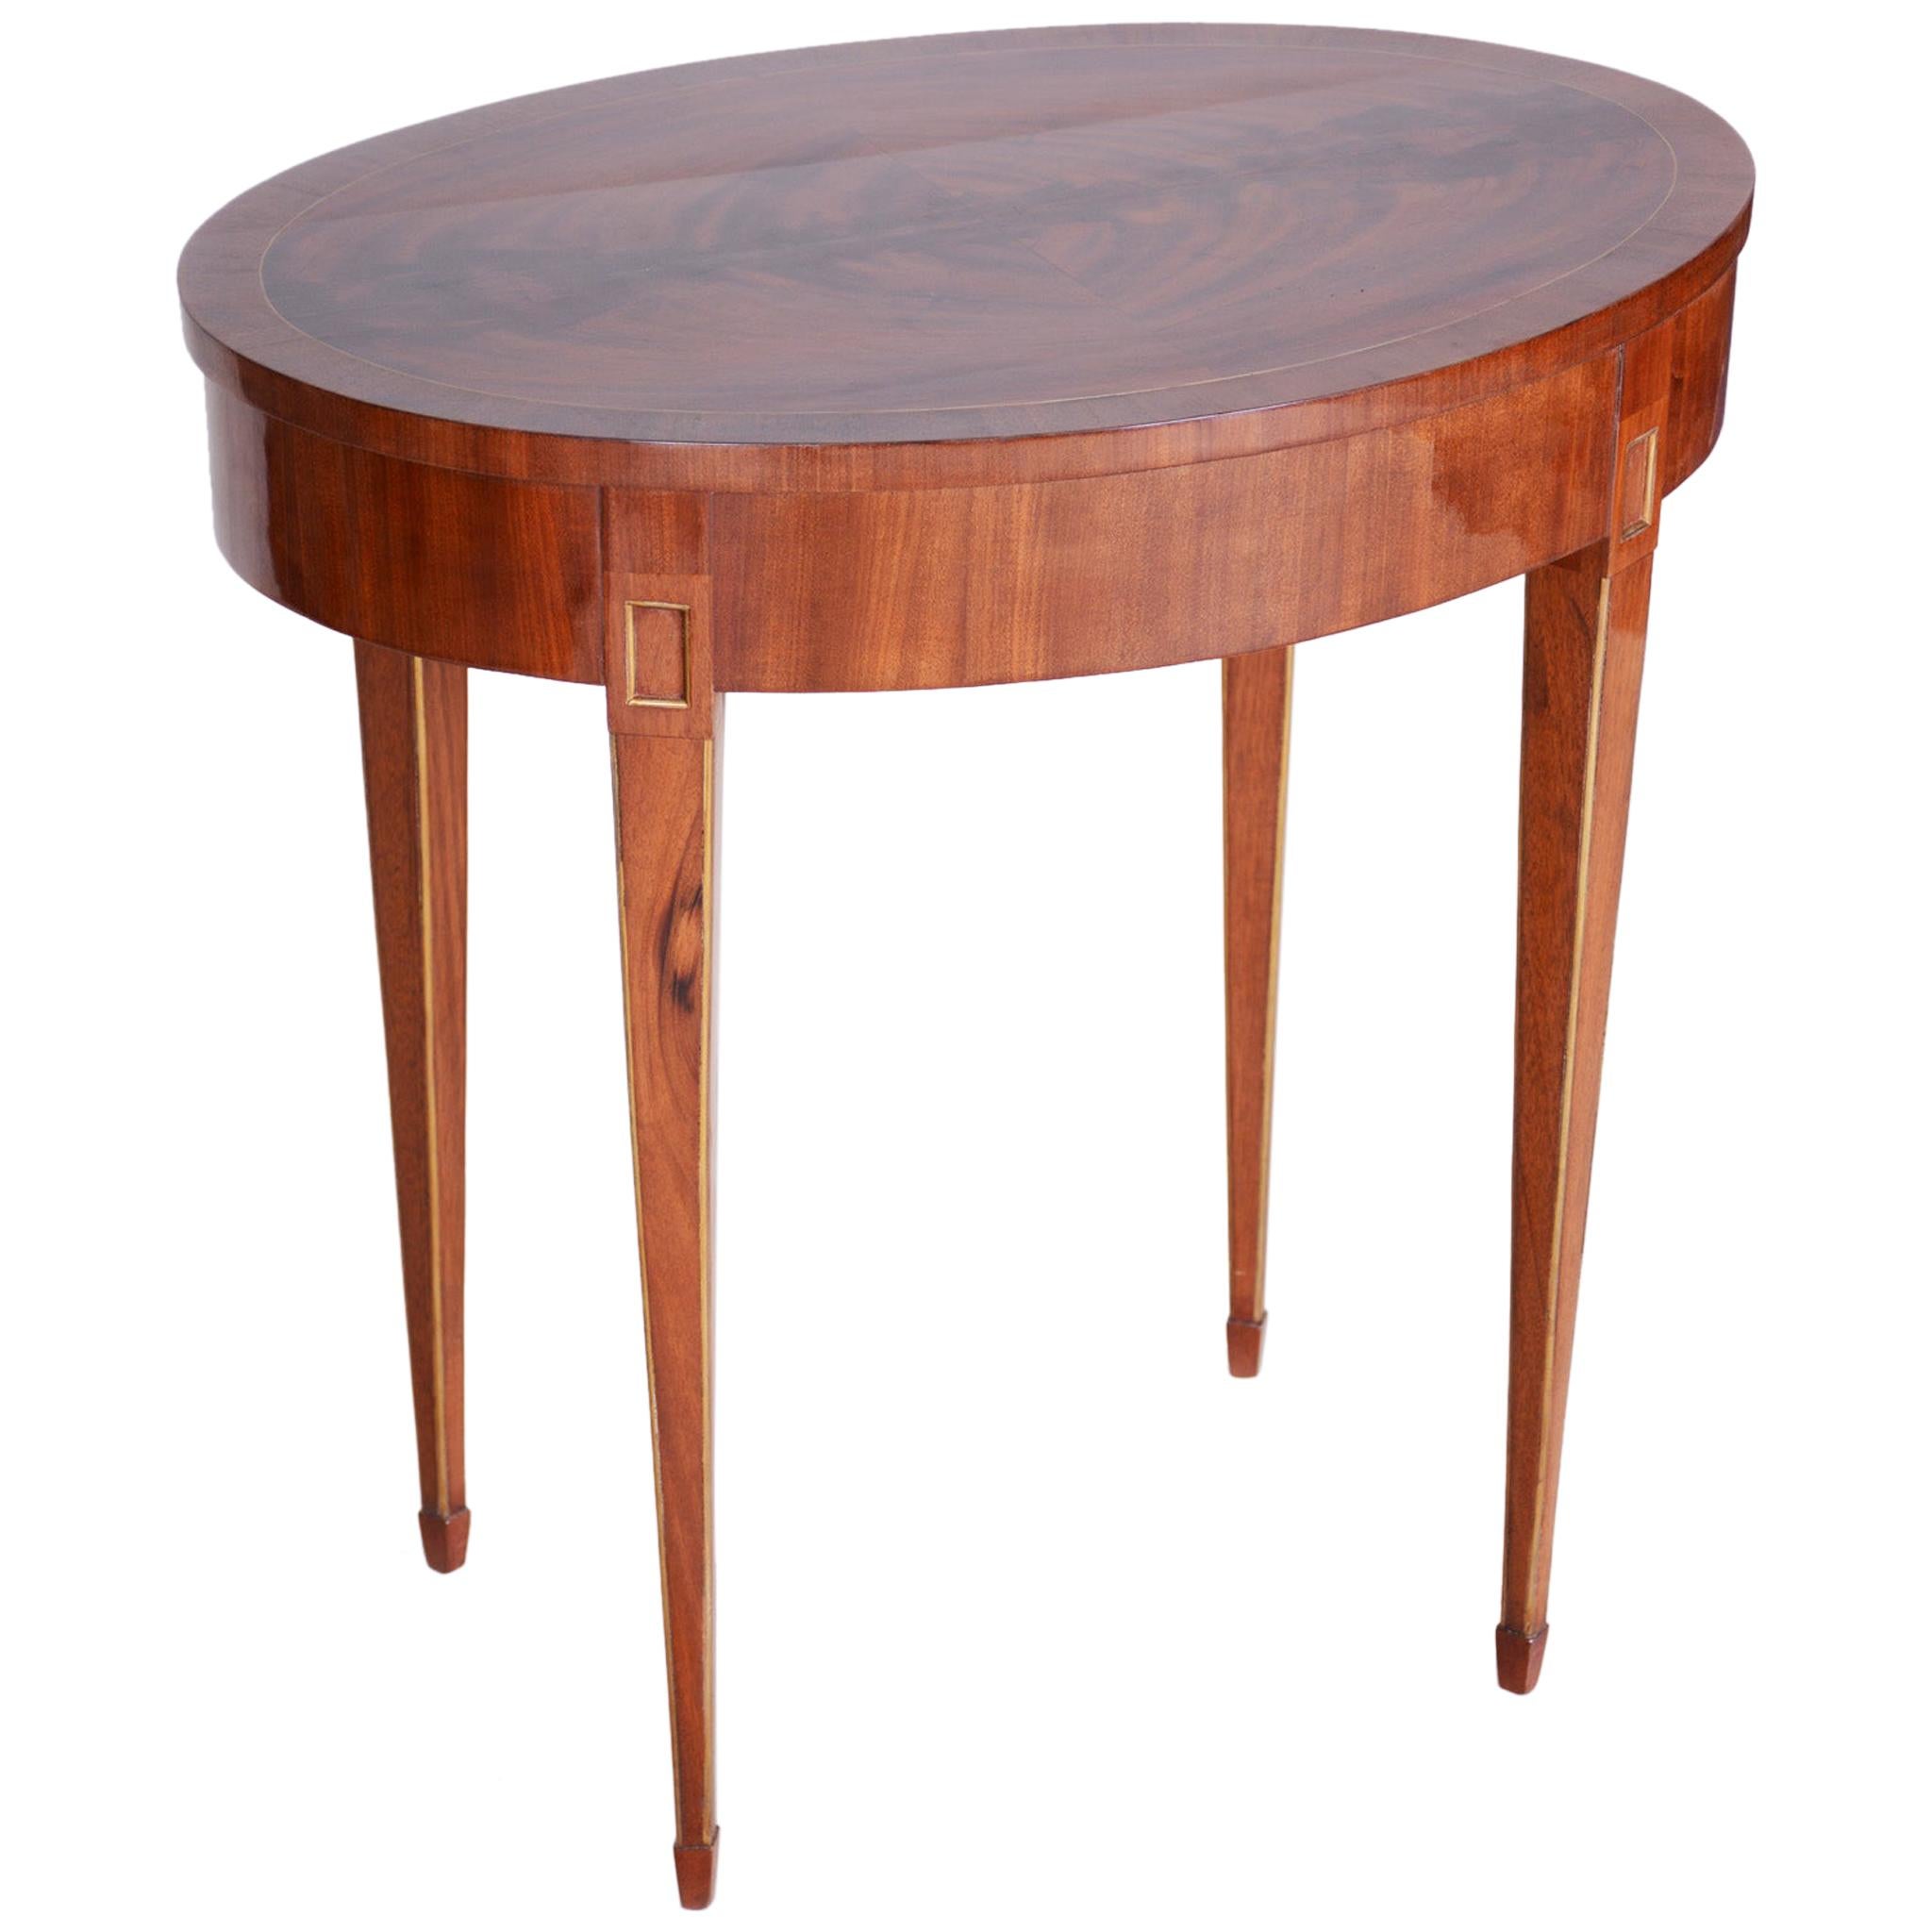 Small Mahogany Biedermeier Oval Table, France 1820-1829, Shellac Polished